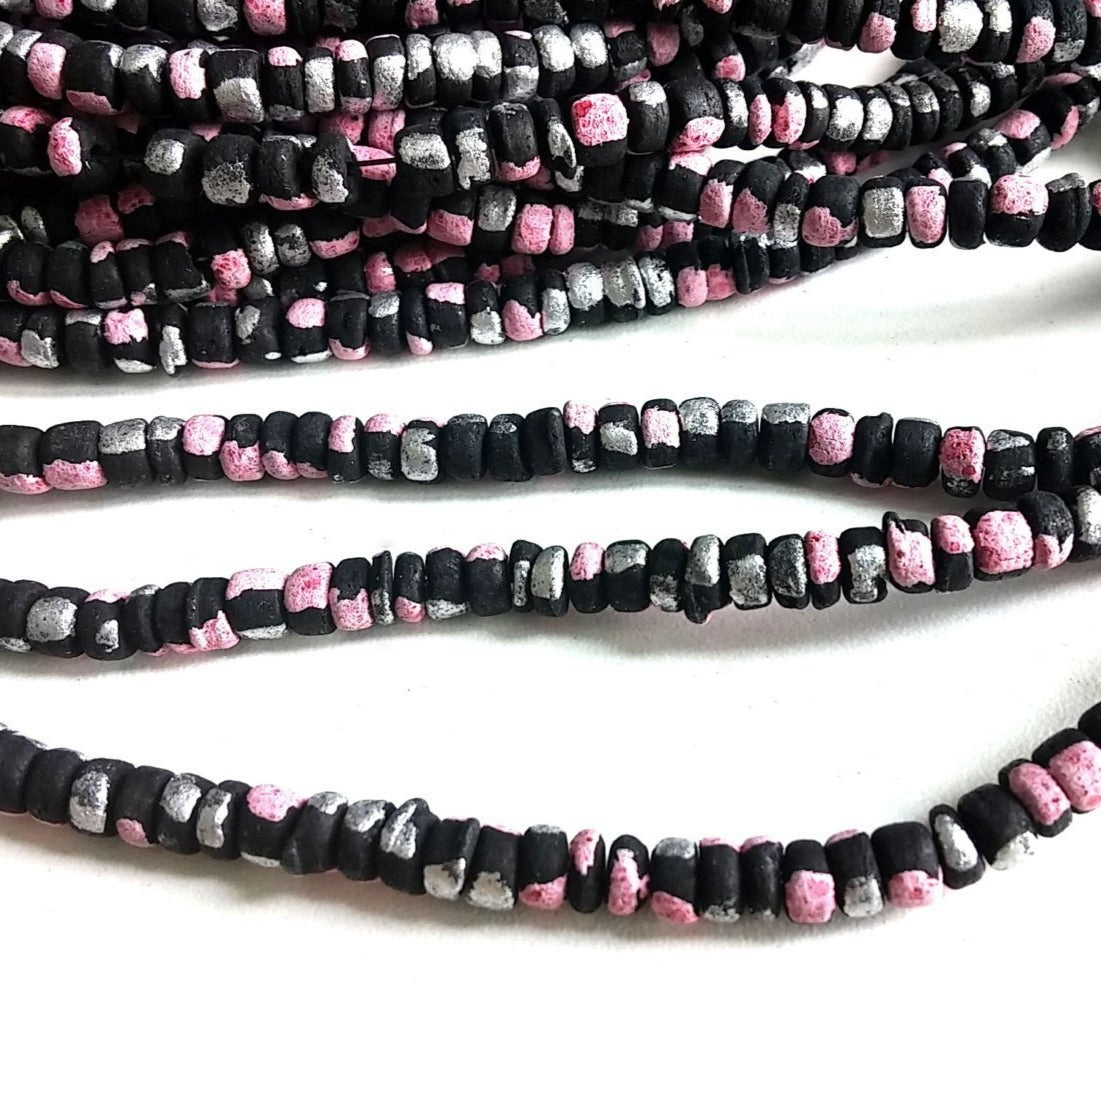 150 perles de bois de coco noir, rose et argent en rondelle de 4-5mm